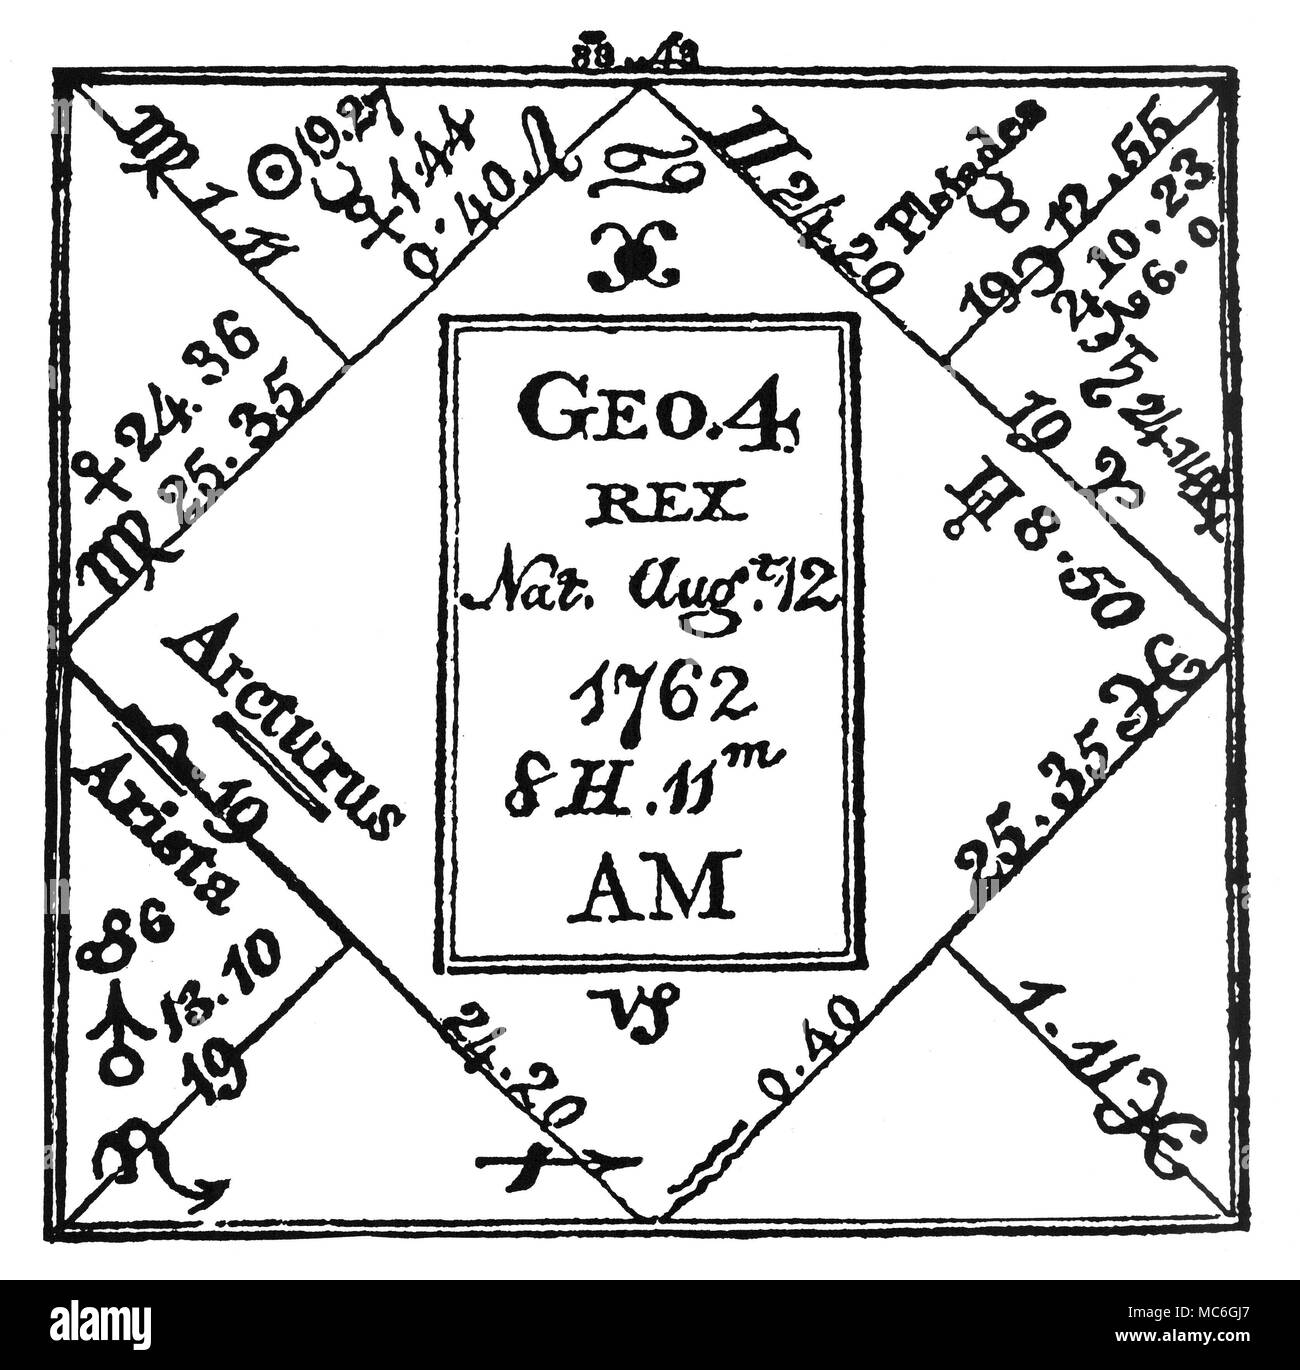 Horoskope - CHART von König George IV. Das Horoskop von König George IV. von England, der am 12. August 1762 geboren wurde. Von der Zerzausten Astrologe des neunzehnten Jahrhunderts [Illustration Nr. 56]. Stockfoto